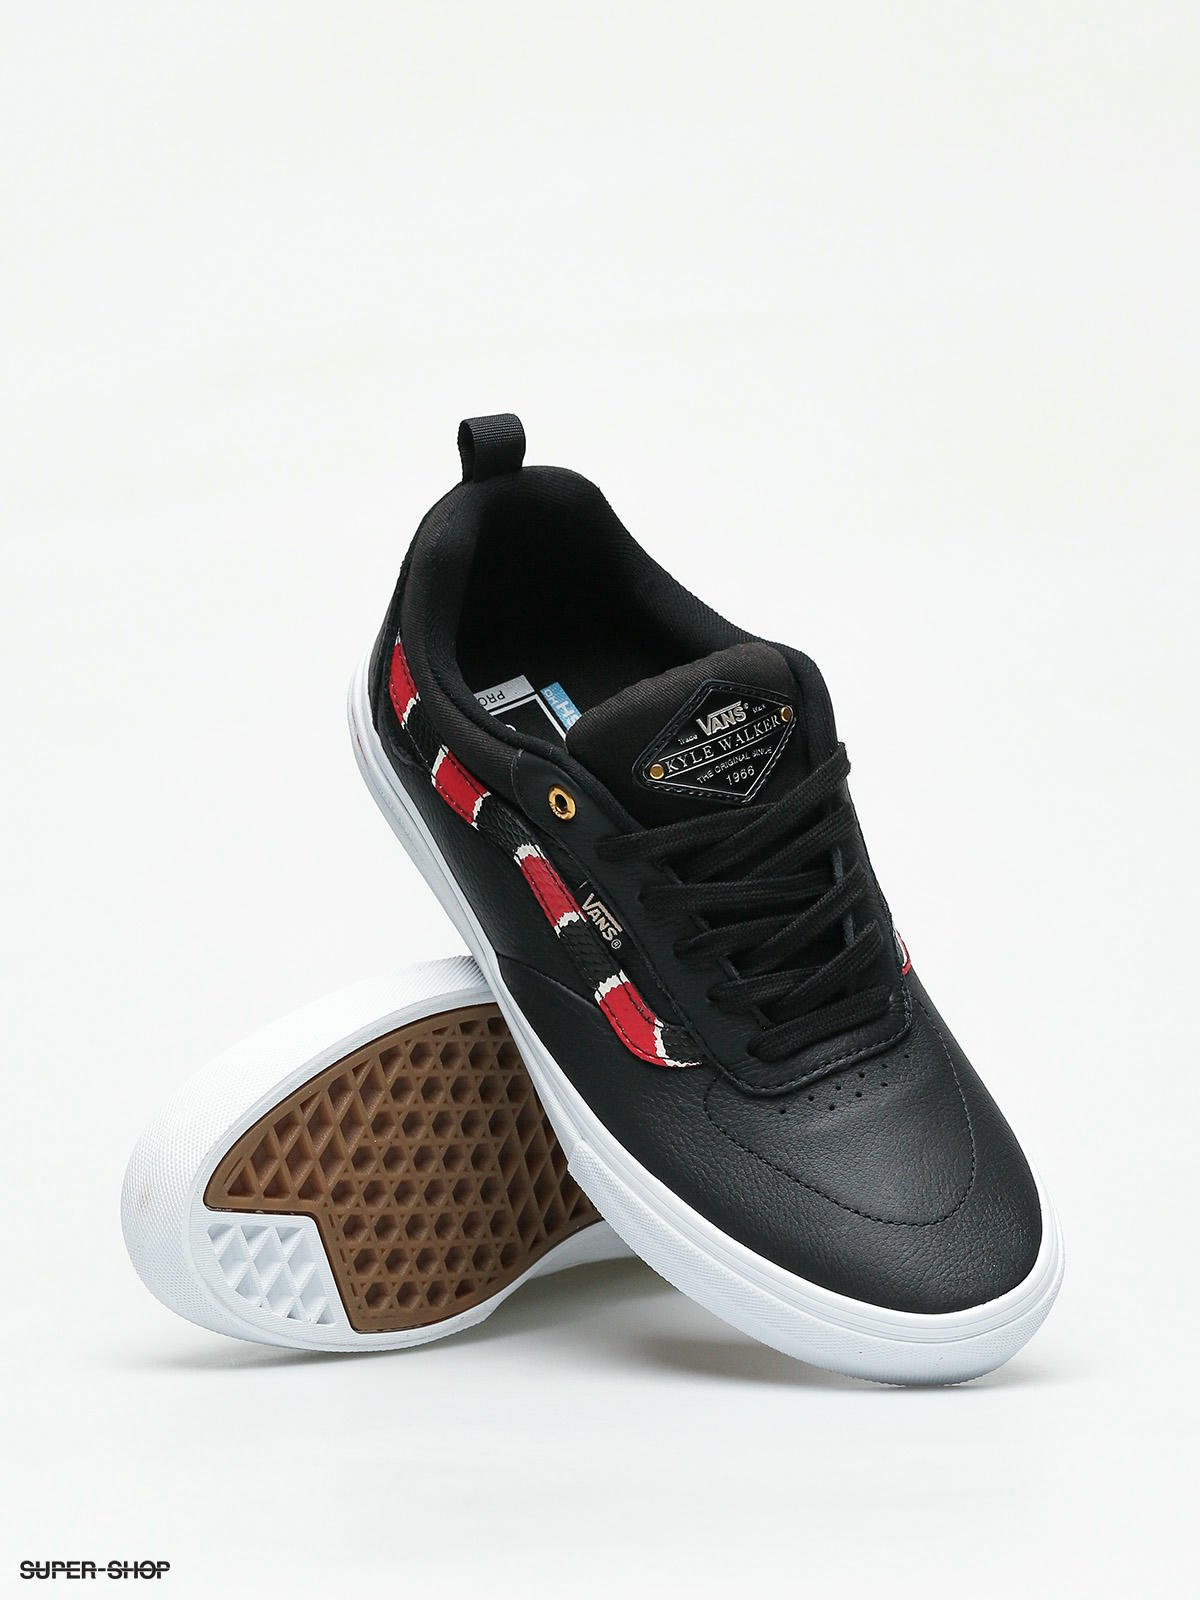 vans kyle walker pro coral snake & black leather skate shoes